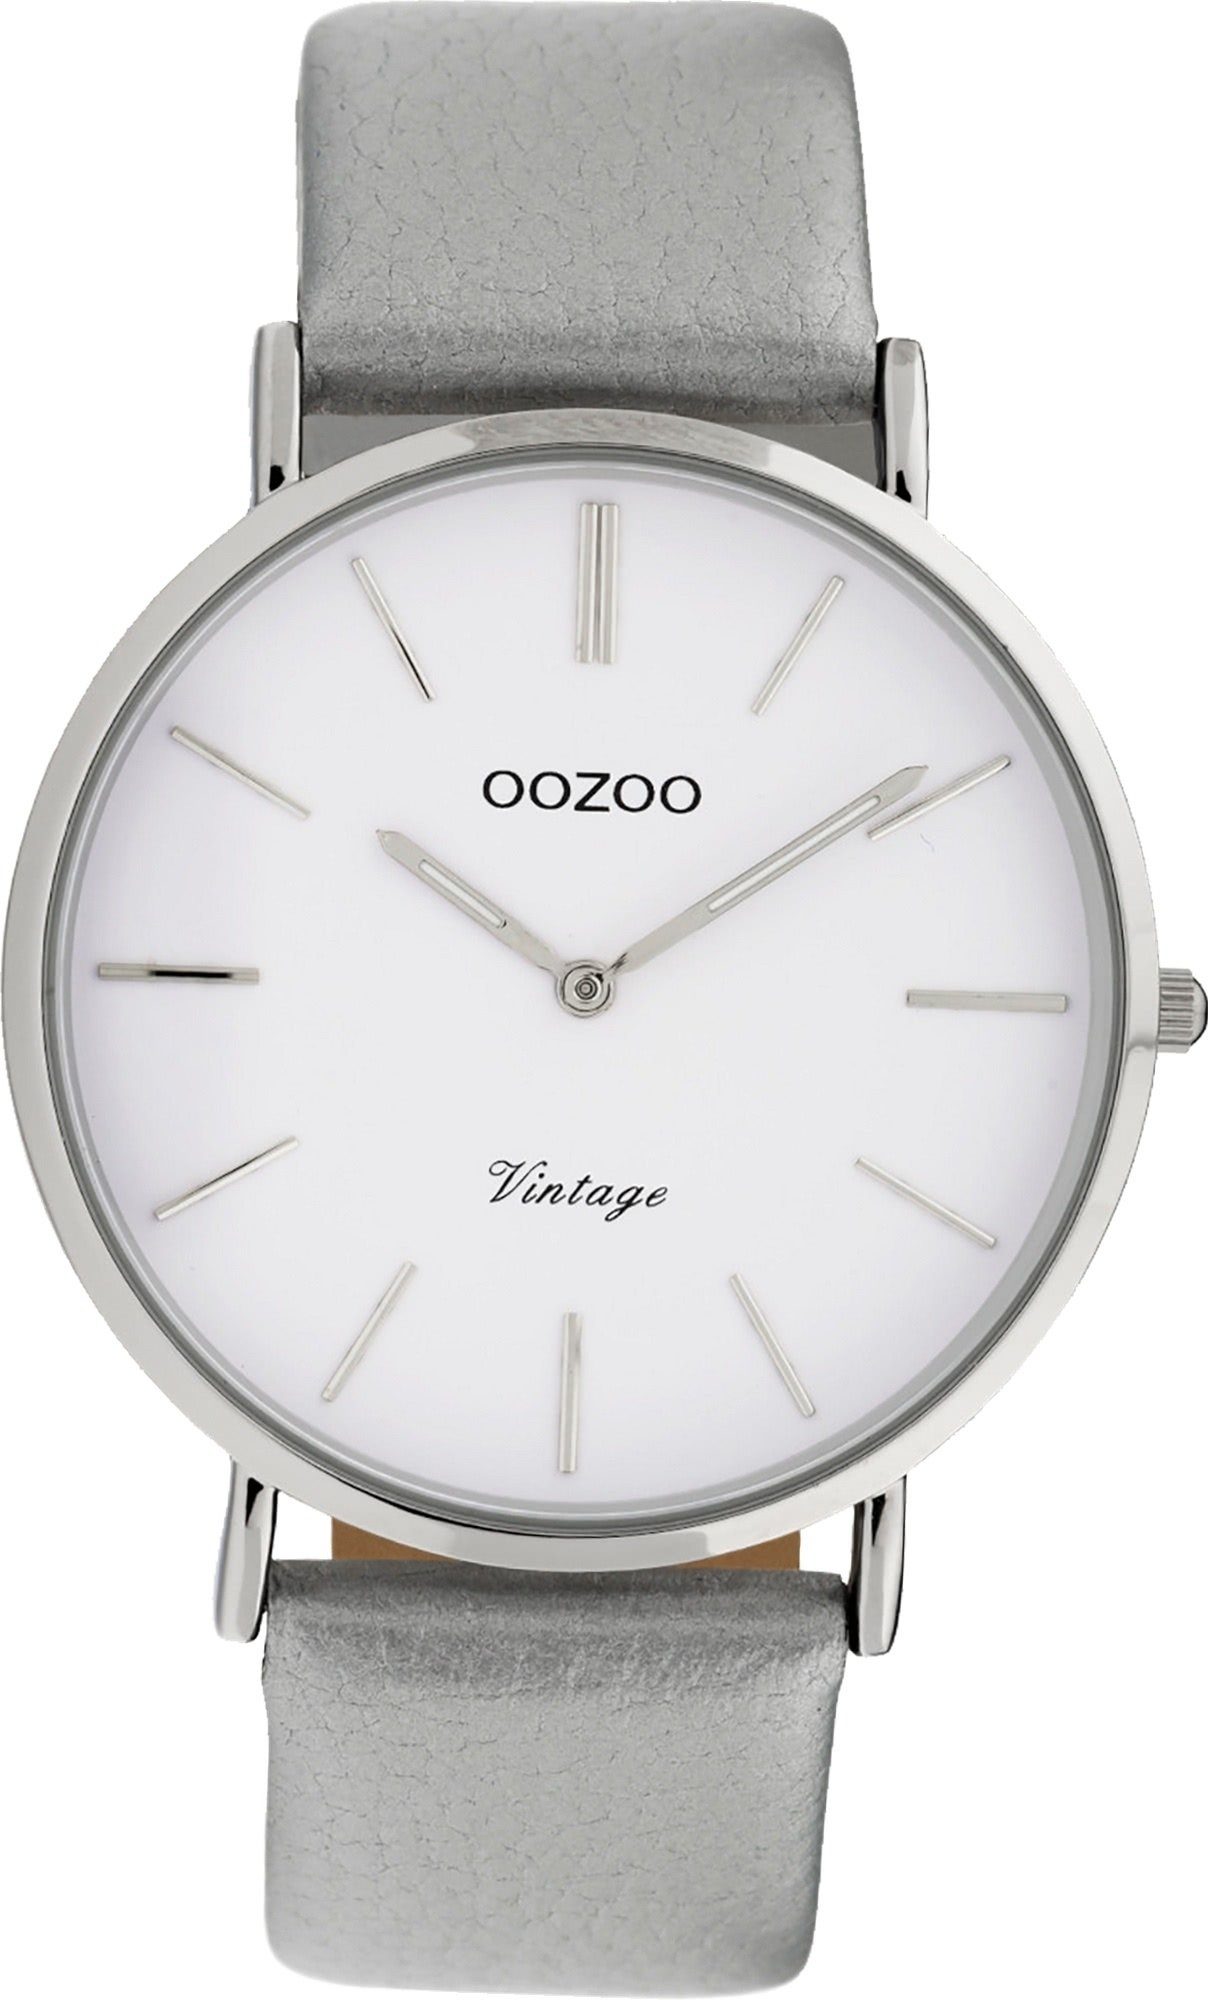 Leder Uhr Damenuhr groß OOZOO Gehäuse, C9960 rundes Damen (ca. Quarzuhr 40mm) grau, Analog, Oozoo Lederarmband